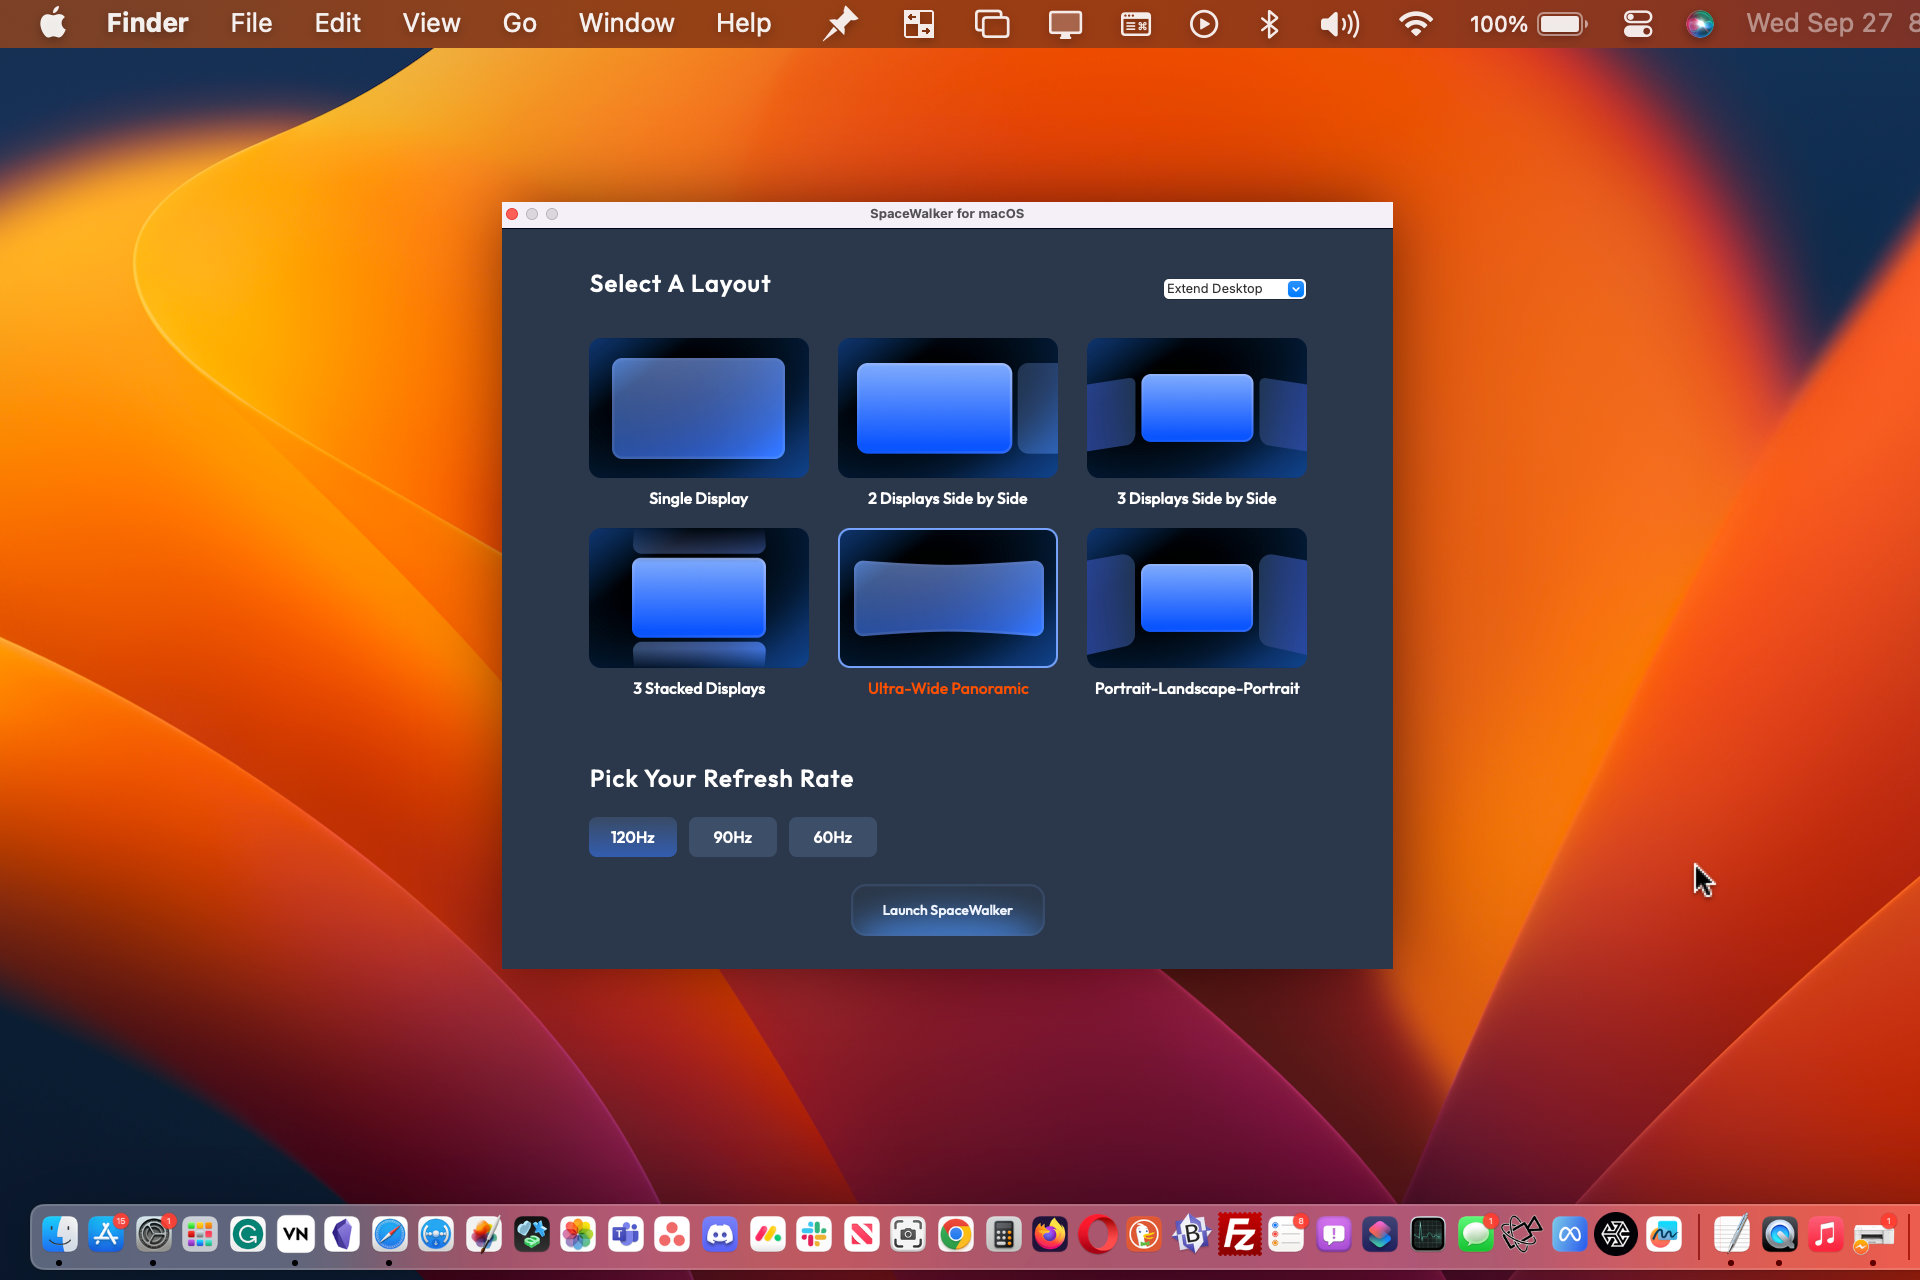 Viture SpaceWalker has several display options on macOS.